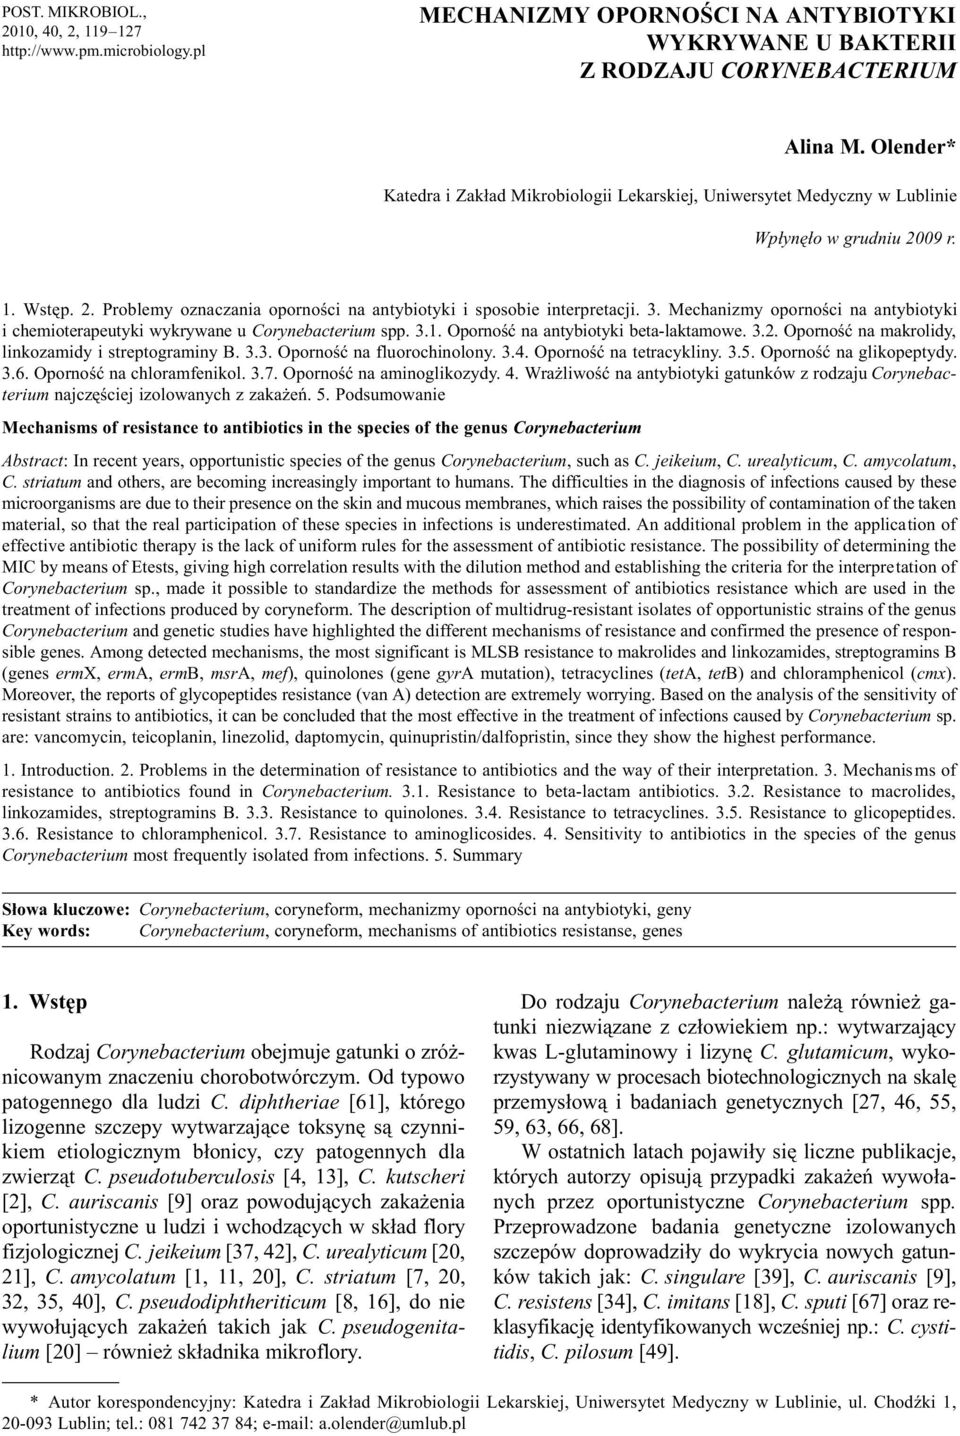 Mechanizmy opornoœci na antybiotyki i chemioterapeutyki wykrywane u Corynebacterium spp. 3.1. Opornoœæ na antybiotyki beta-laktamowe. 3.2. Opornoœæ na makrolidy, linkozamidy i streptograminy B. 3.3. Opornoœæ na fluorochinolony.